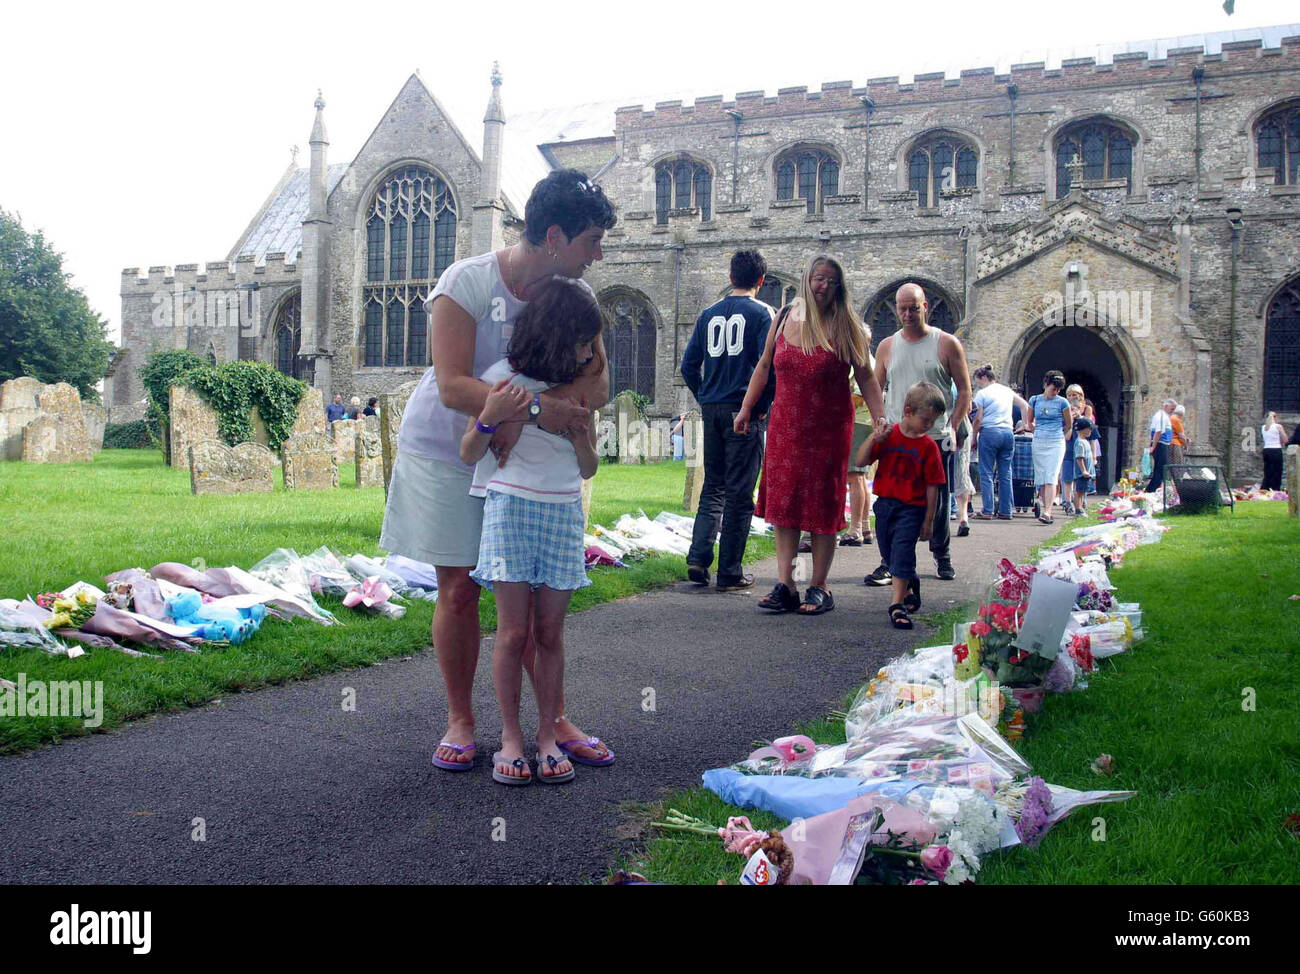 Menschen legen Blumen und beten in der St. Andrews Church, Soham, Cambs, für die ermordeten Schulmädchen Holly Wells & Jessica Chapman. Stockfoto